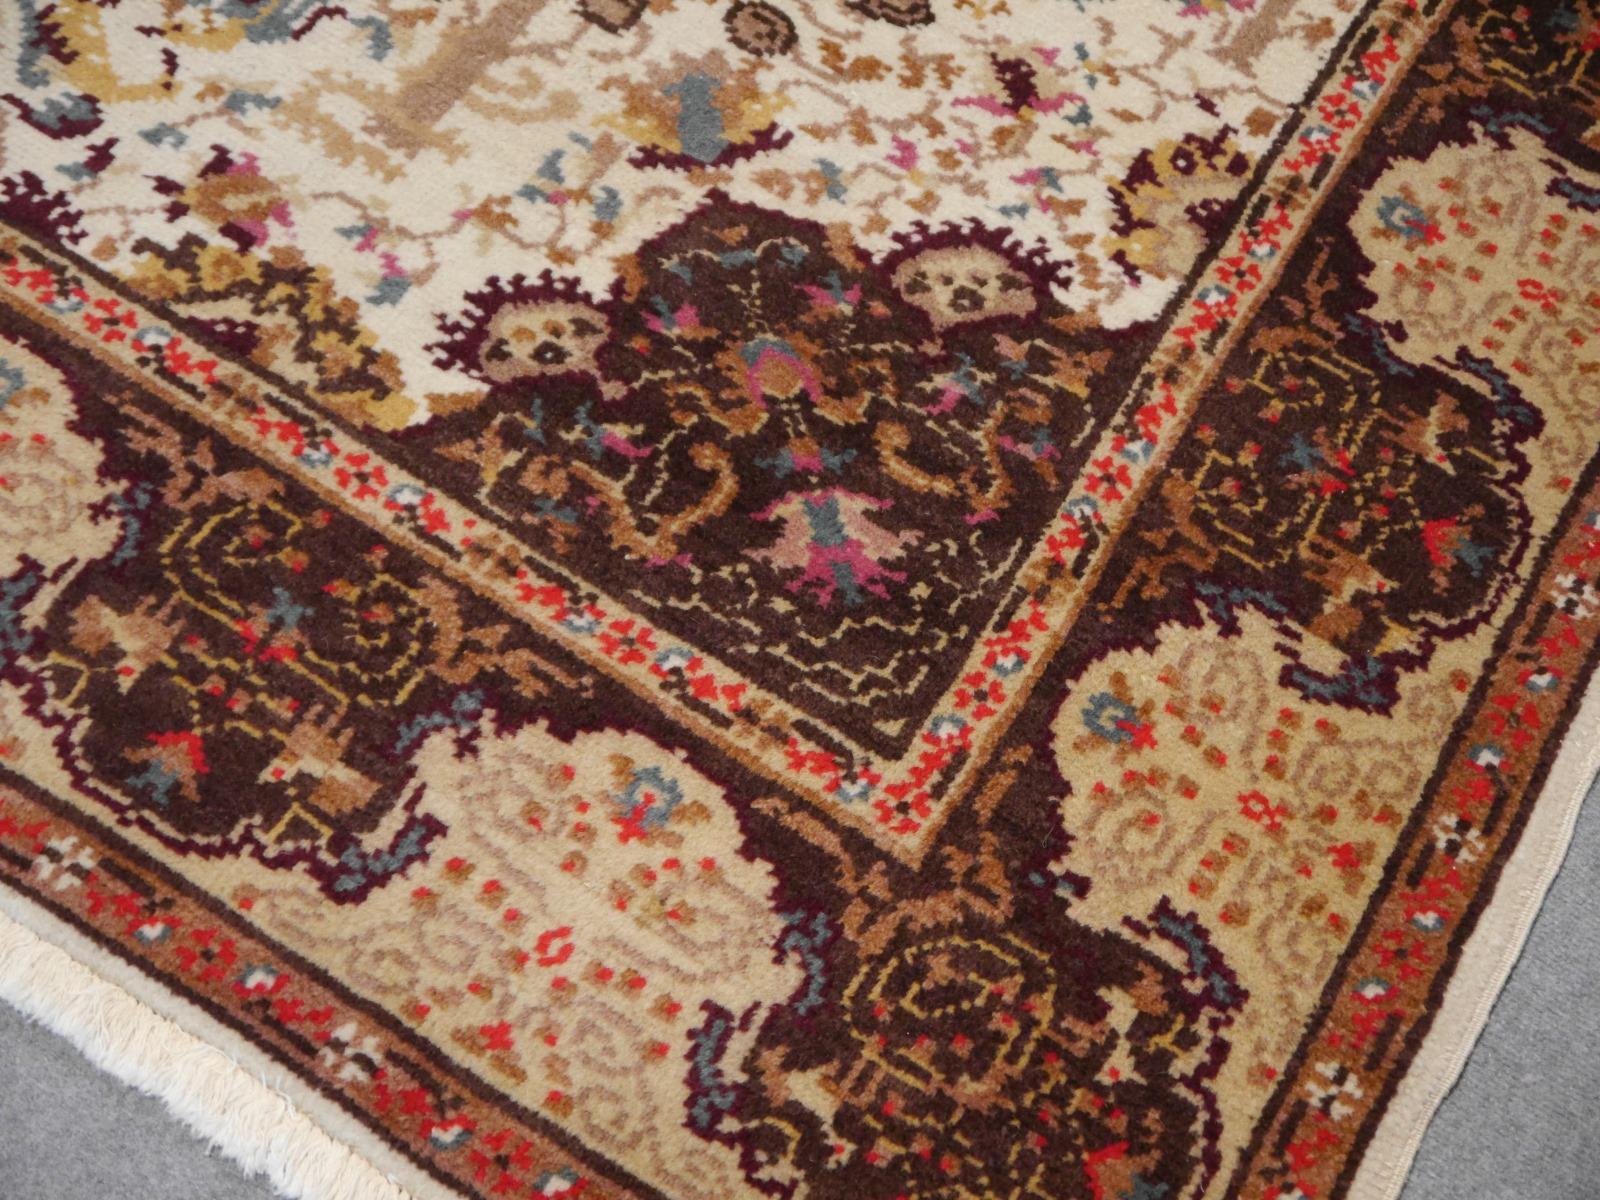 Türkischer Vintage Teppich handgeknüpft Medaillon Design beige braun Bereich Teppich 

Türkische Teppiche werden hauptsächlich aus feiner Wolle hergestellt, 
Dieses wunderschöne und beeindruckende Exemplar stammt aus Westanatolien.

Dieser